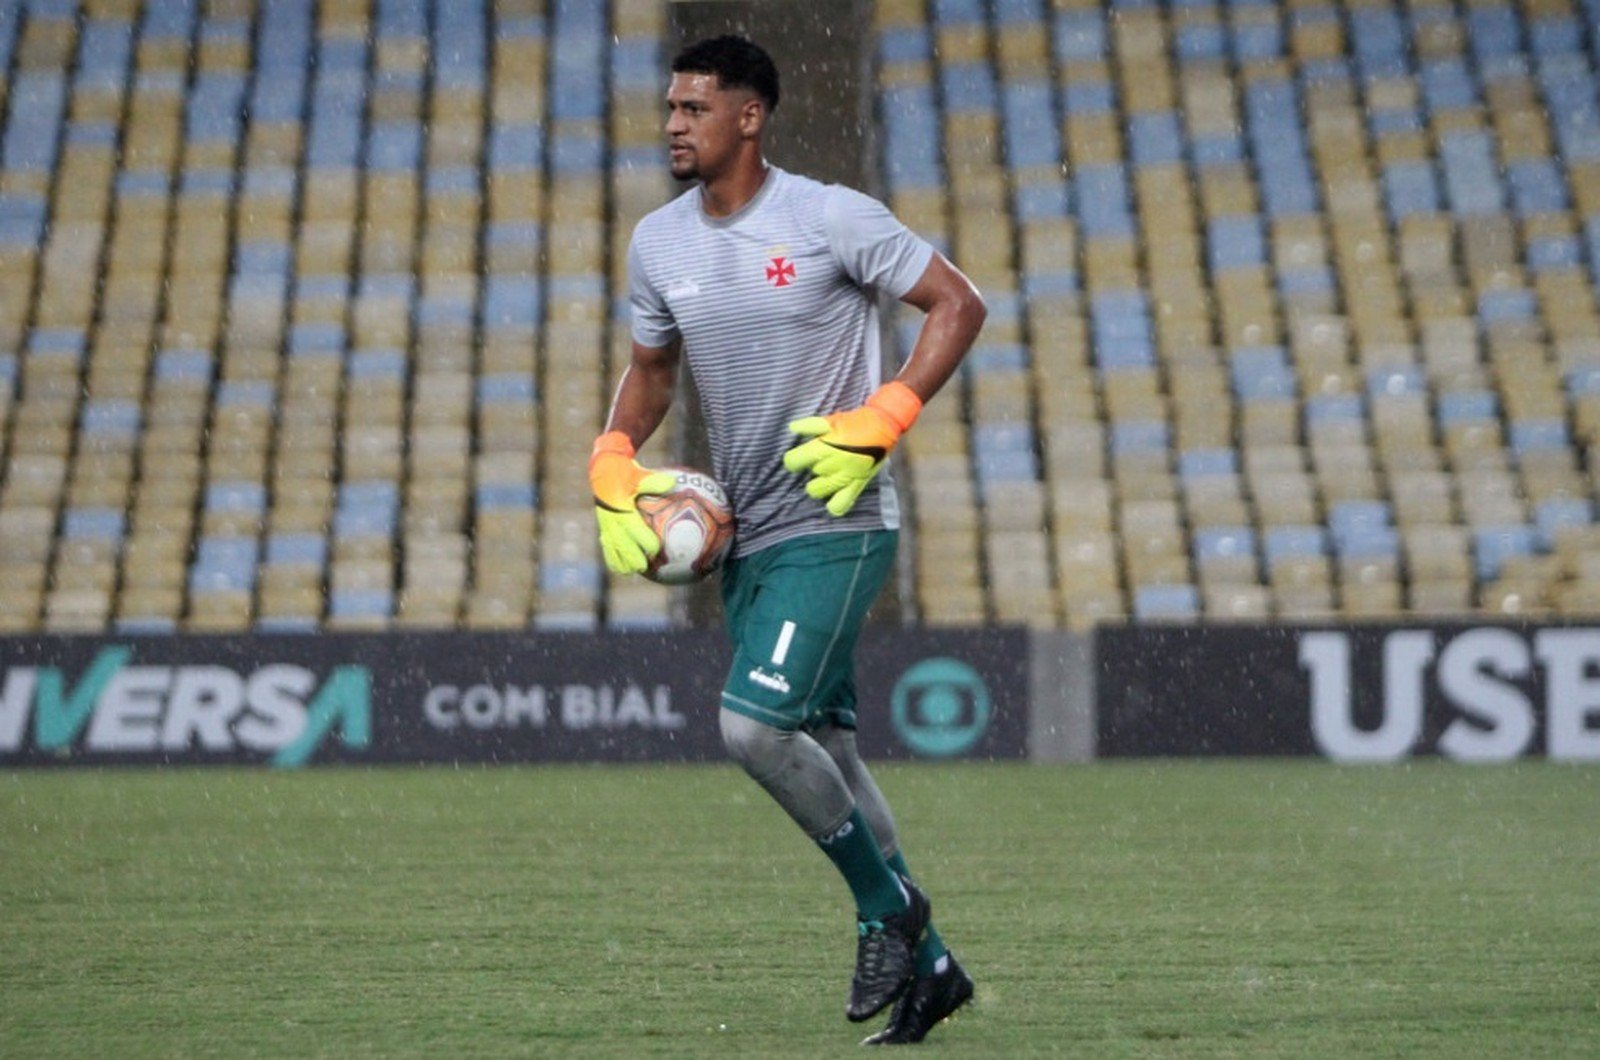 Outros jogadores - Alexander já foi titular, hoje é terceiro goleiro e passou o Campeonato Estadual praticamente todo em recuperação. Weverton e Guilherme Carneiro não tiveram oportunidades.